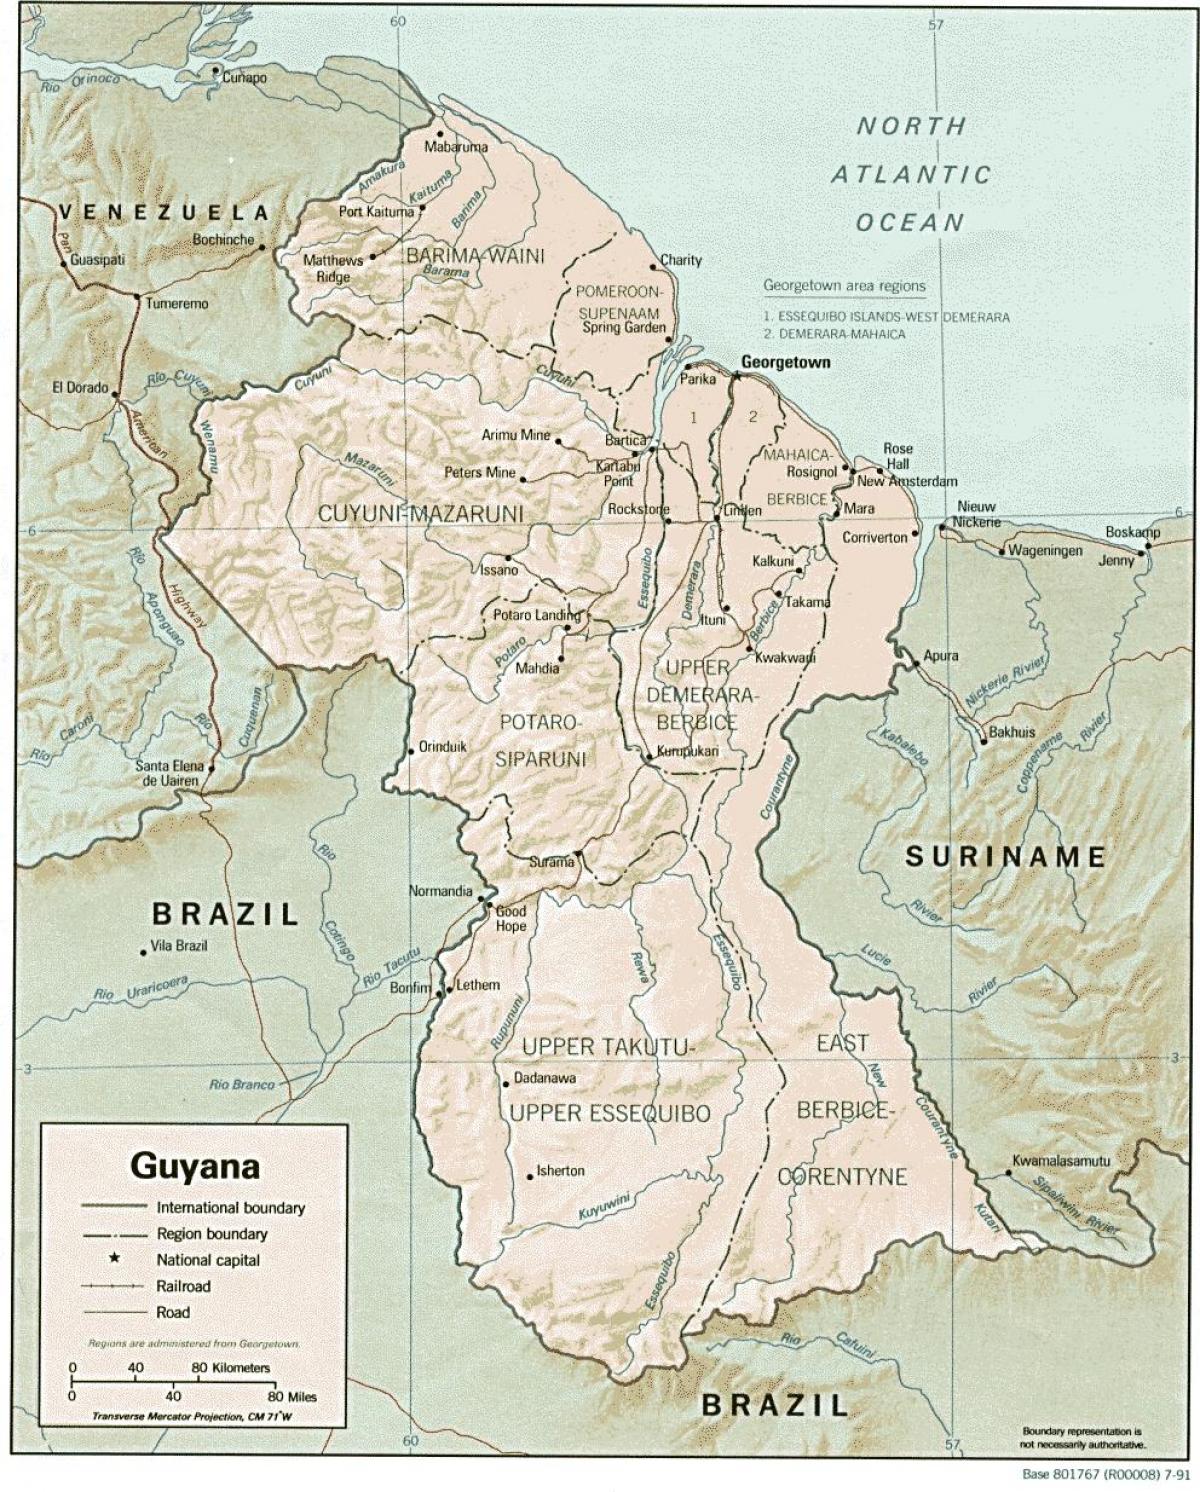 мапата покажувајќи amerindian населби во Гвајана